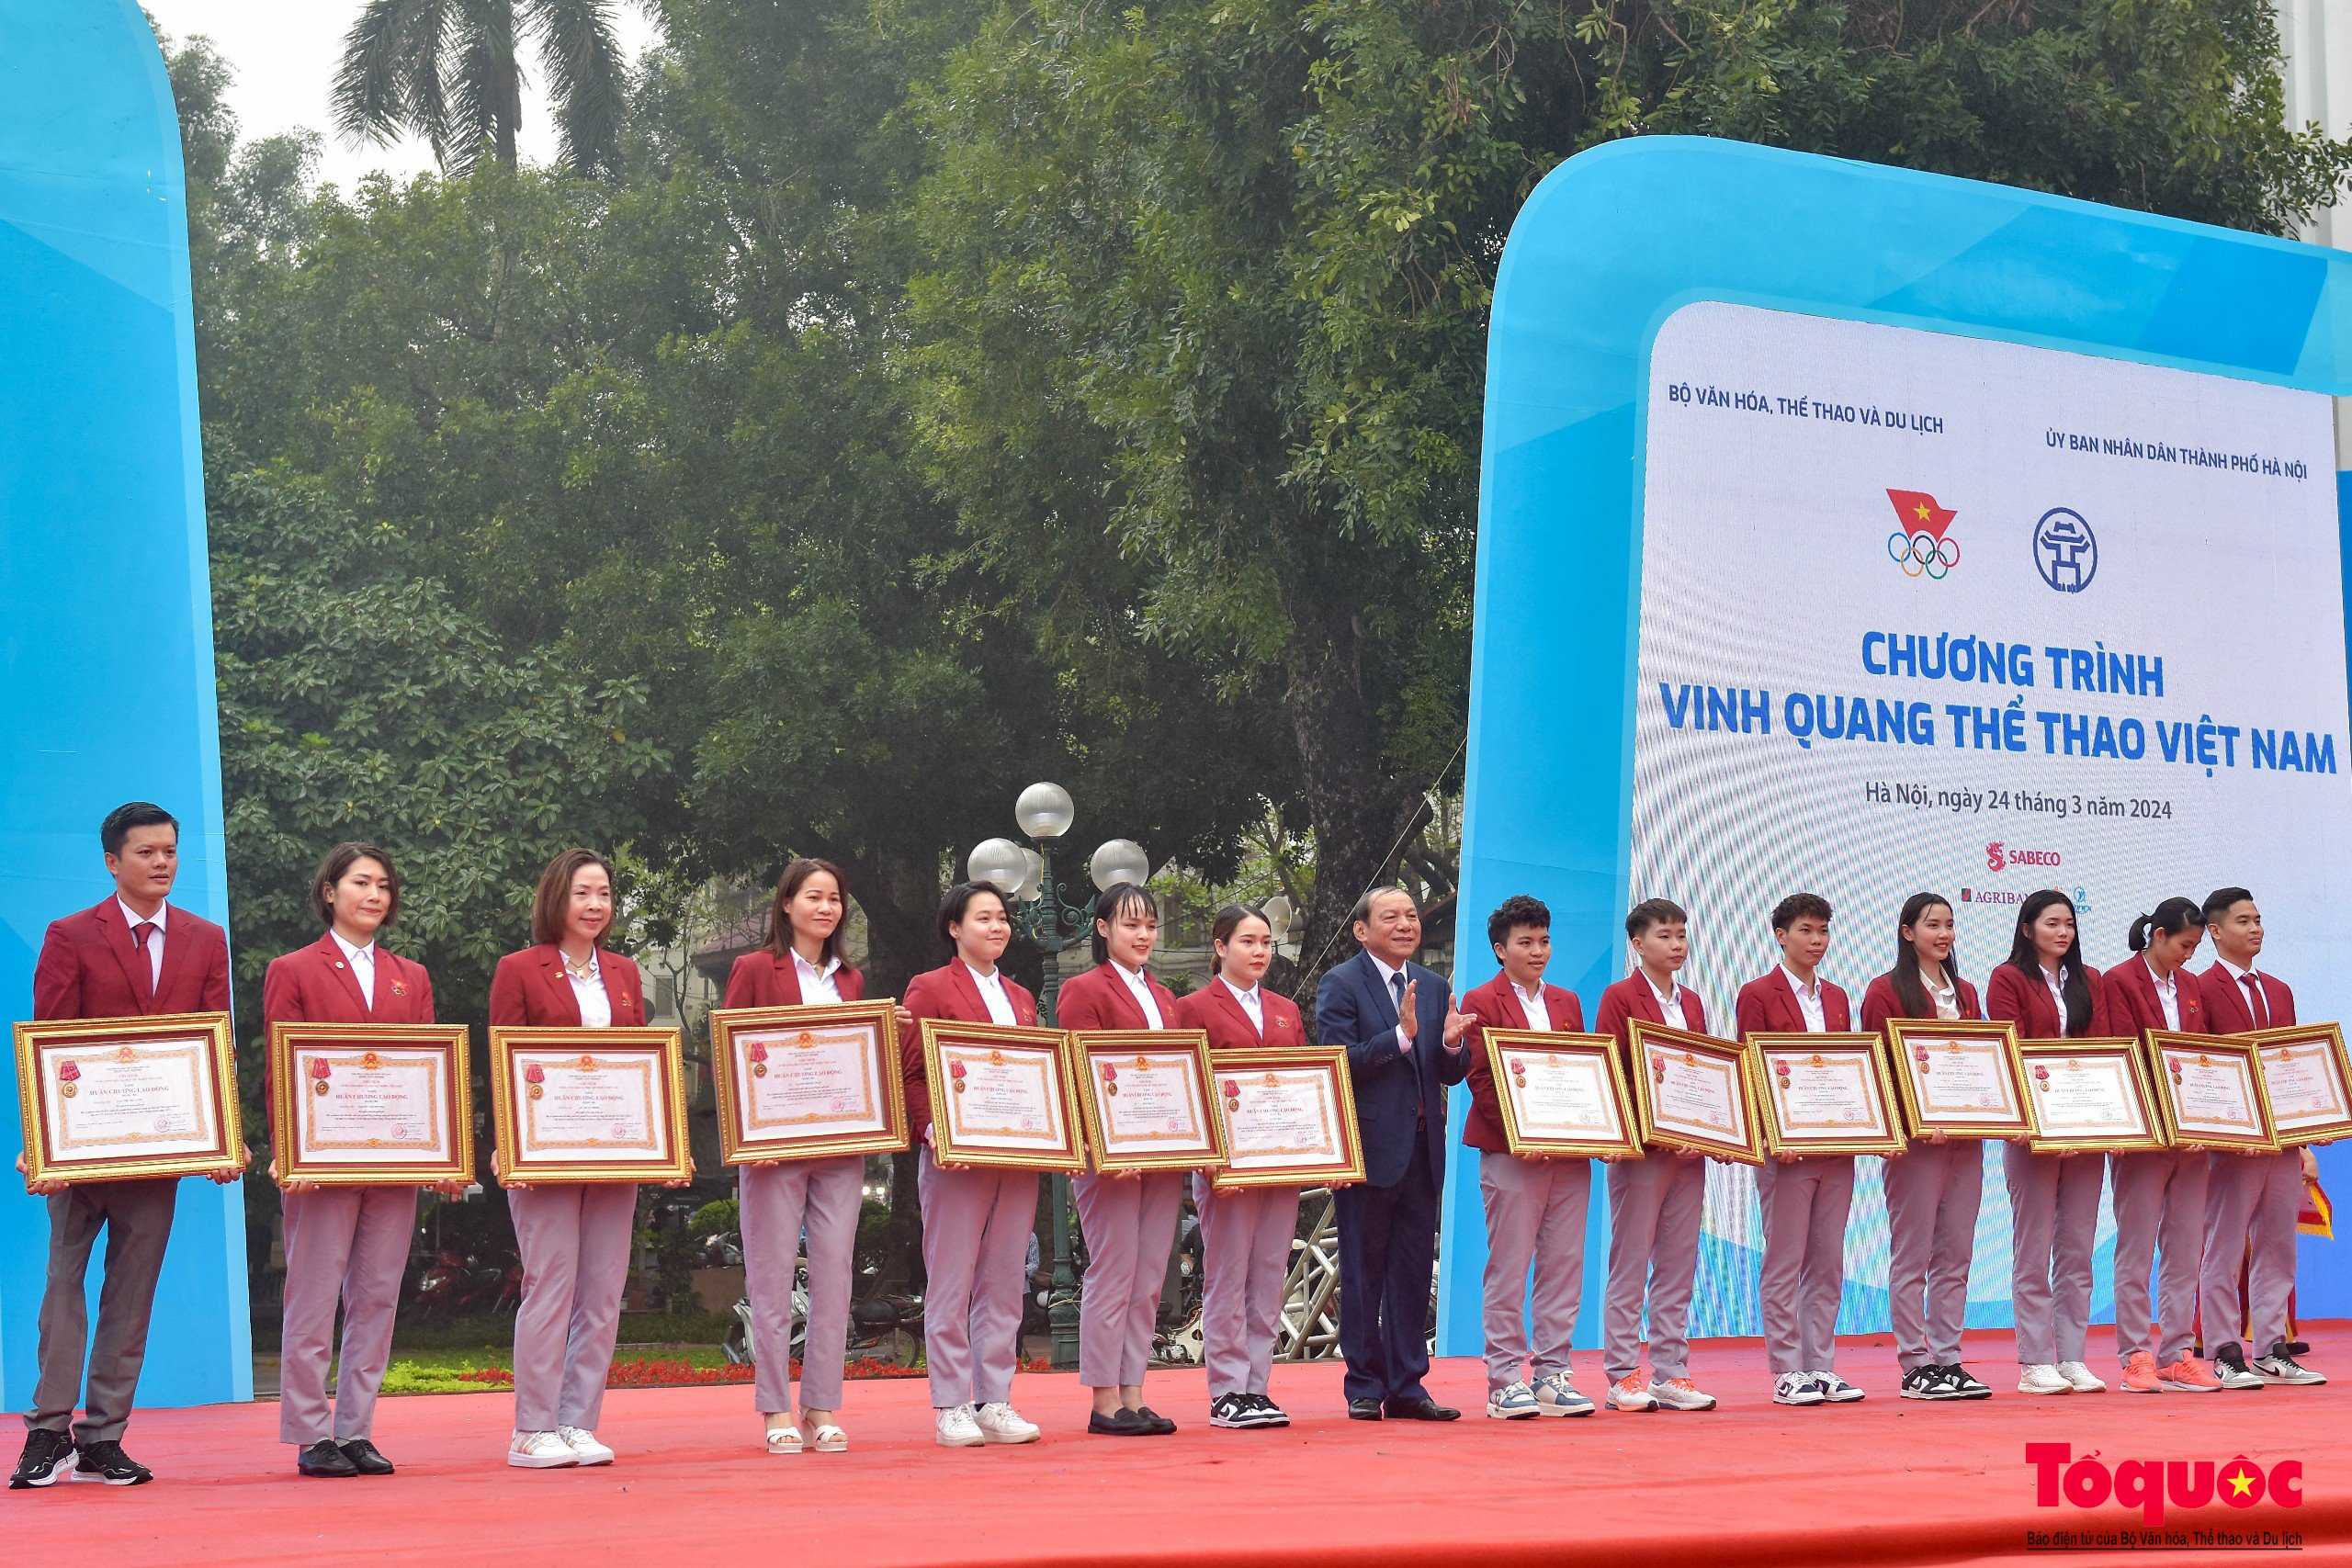 Chùm ảnh: Sôi động chương trình “Vinh quang Thể thao Việt Nam”, phát động Giải chạy Báo Hànộimới mở rộng - Ảnh 7.